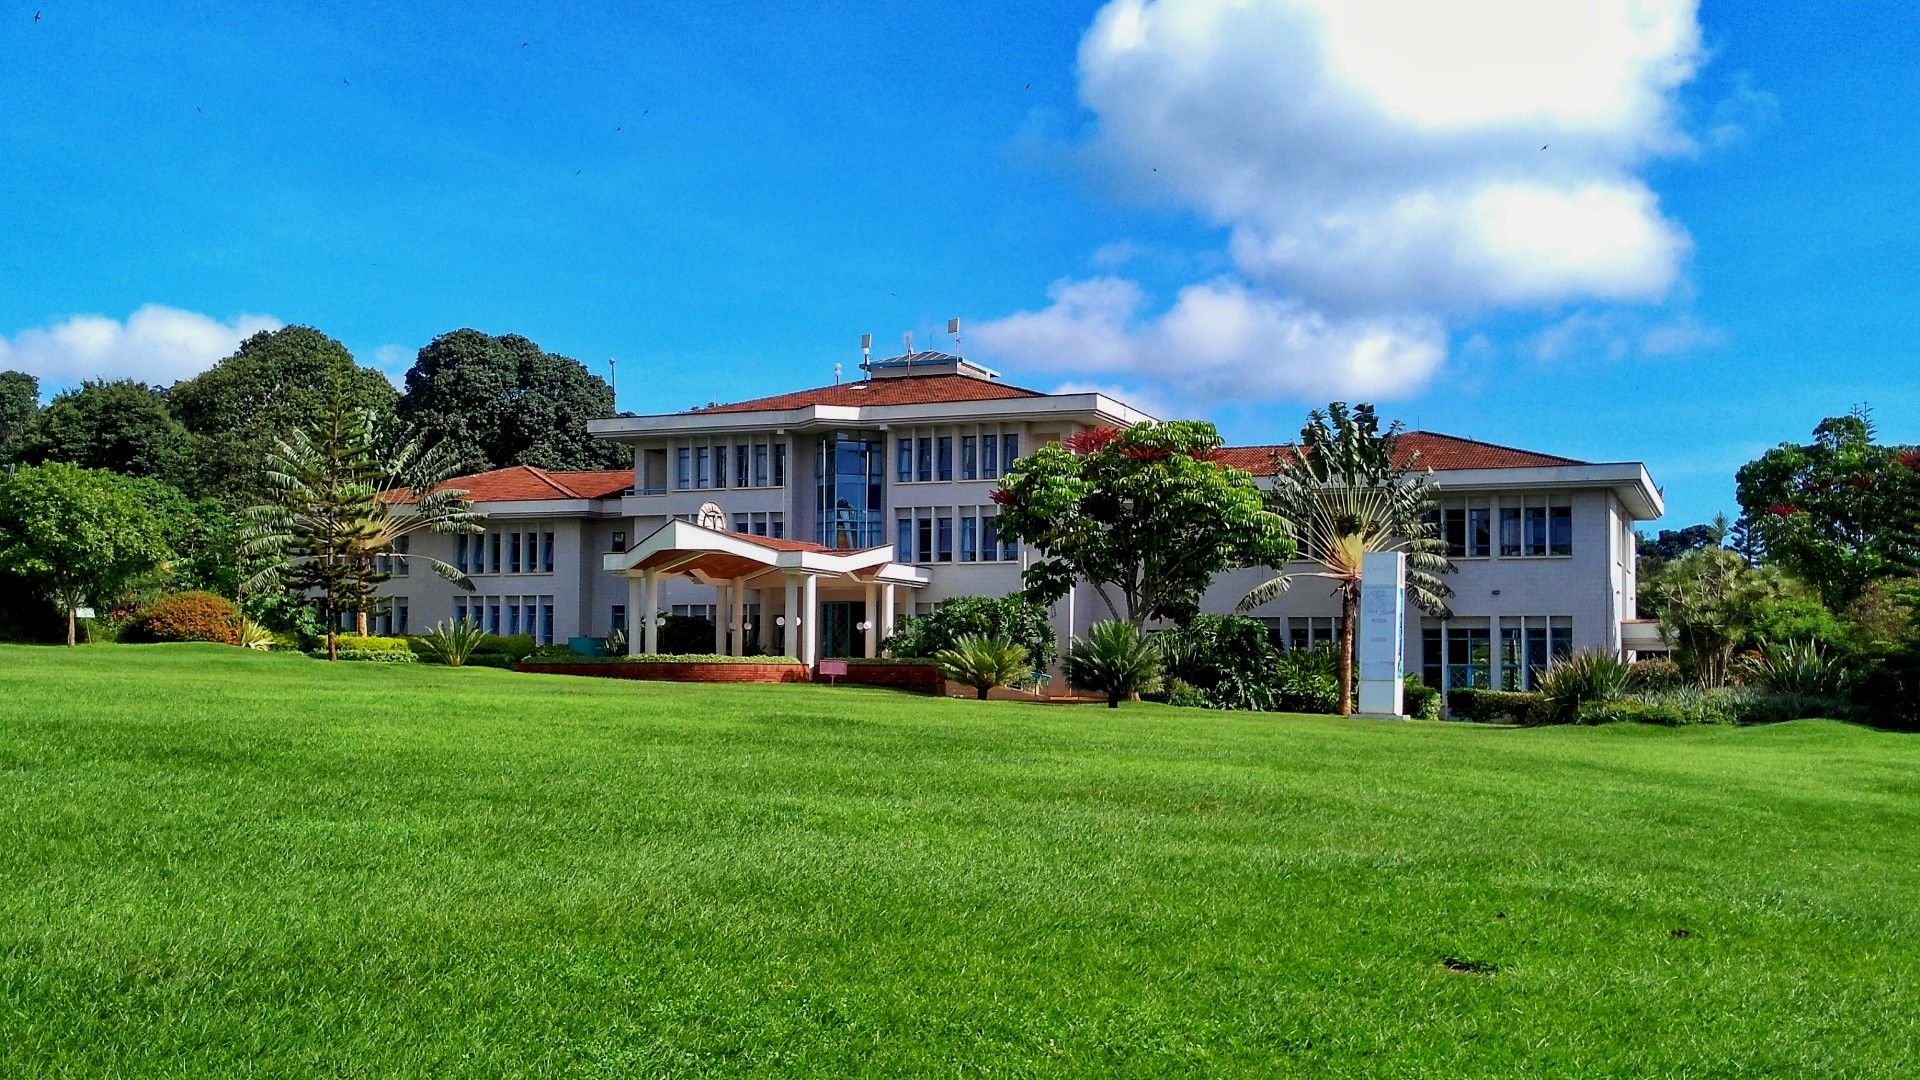 Kenya Methodist University